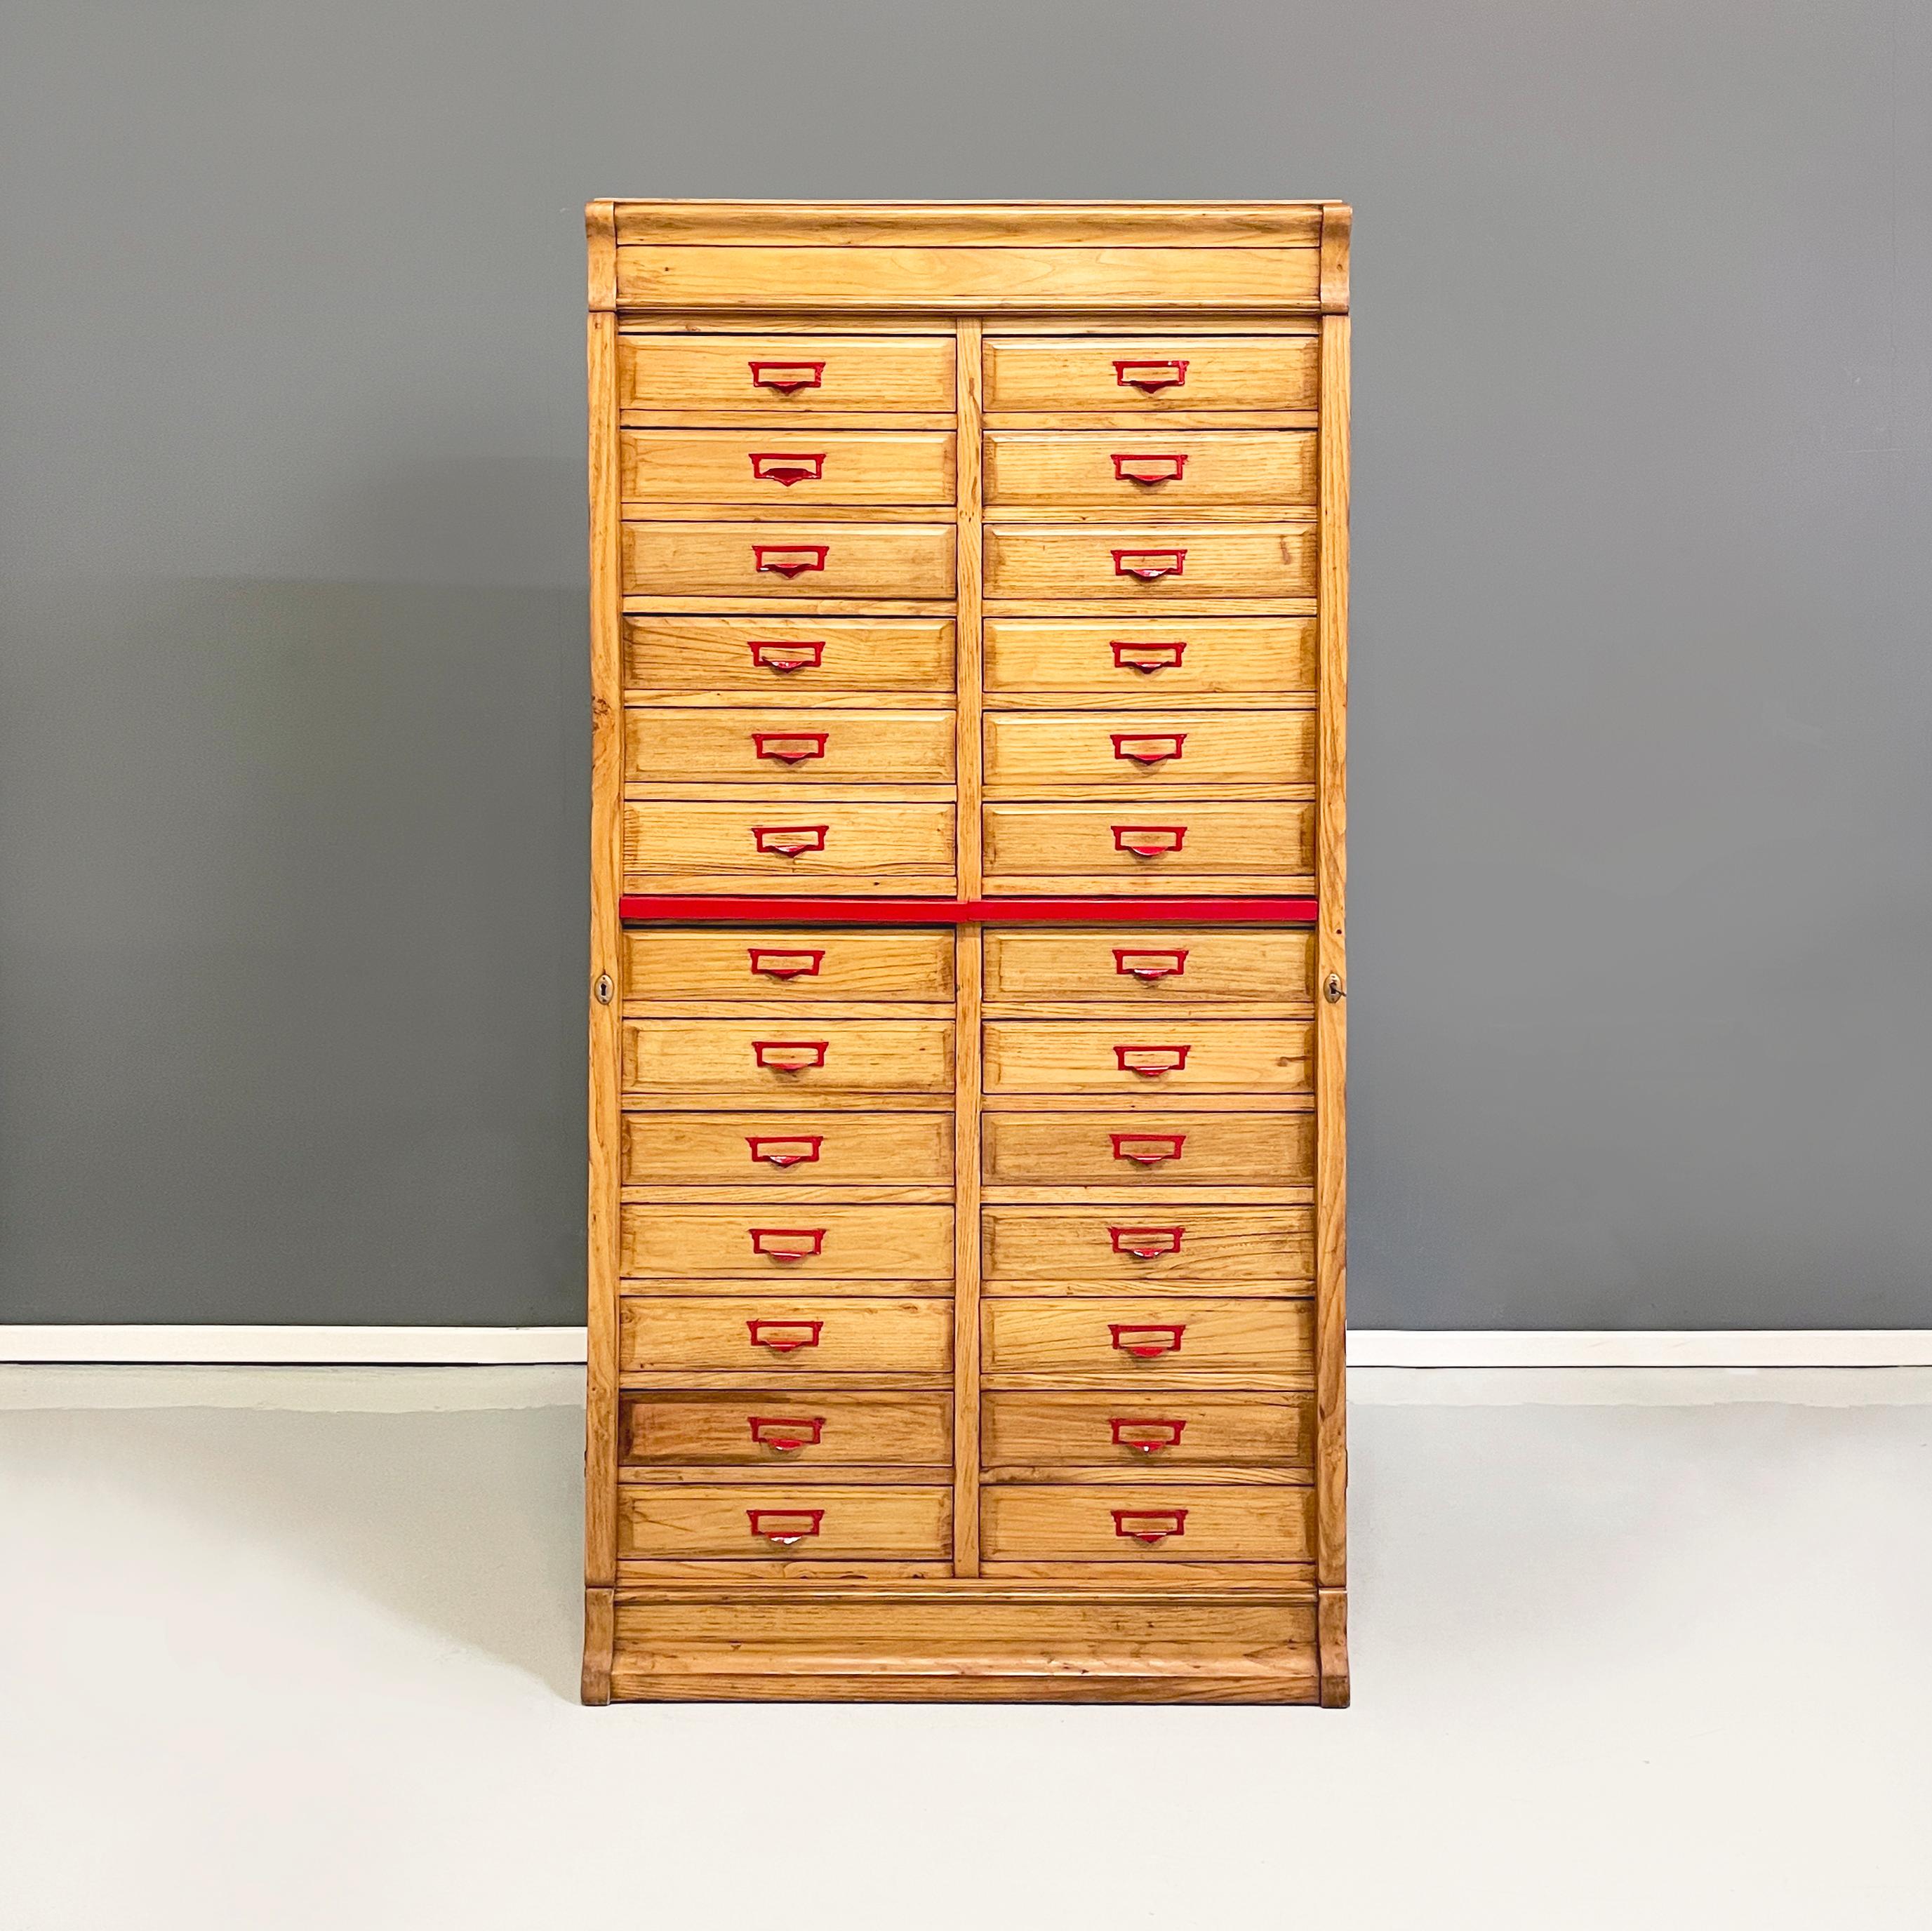 Italienischer Aktenschrank aus der Mitte des Jahrhunderts aus Holz und rotem Metall, 1940er Jahre
Büro-Aktenschrank aus Massivholz mit rot lackiertem Metallstreifen in der Mitte. Auf der Vorderseite hat er 26 rechteckige Schubladen, die auf zwei